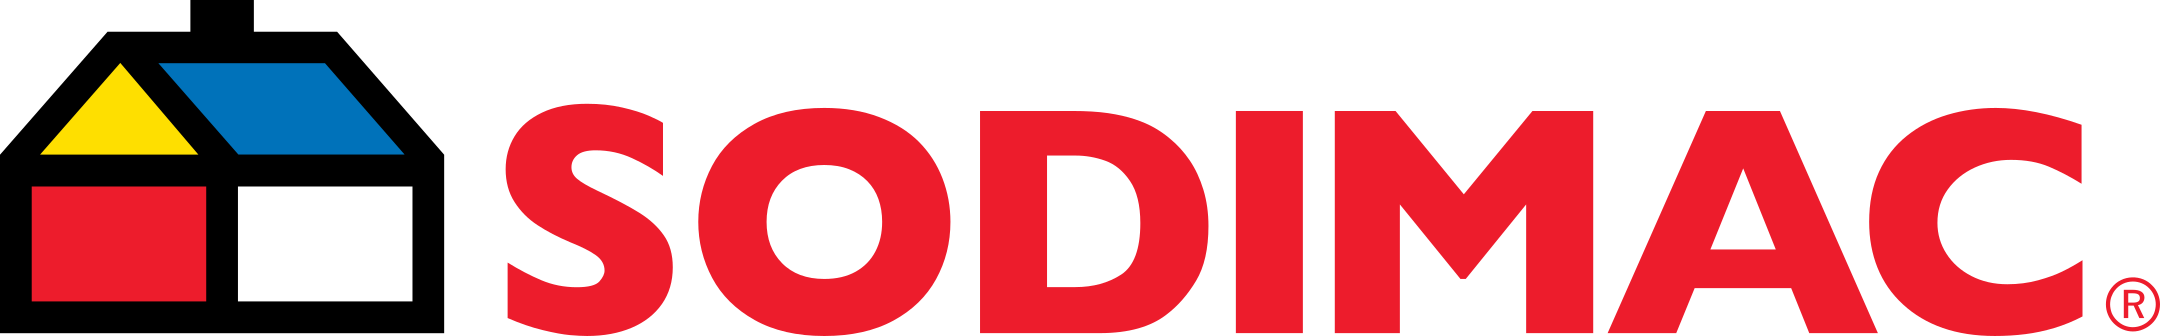 sodimac logo 1 - Sodimac Logo